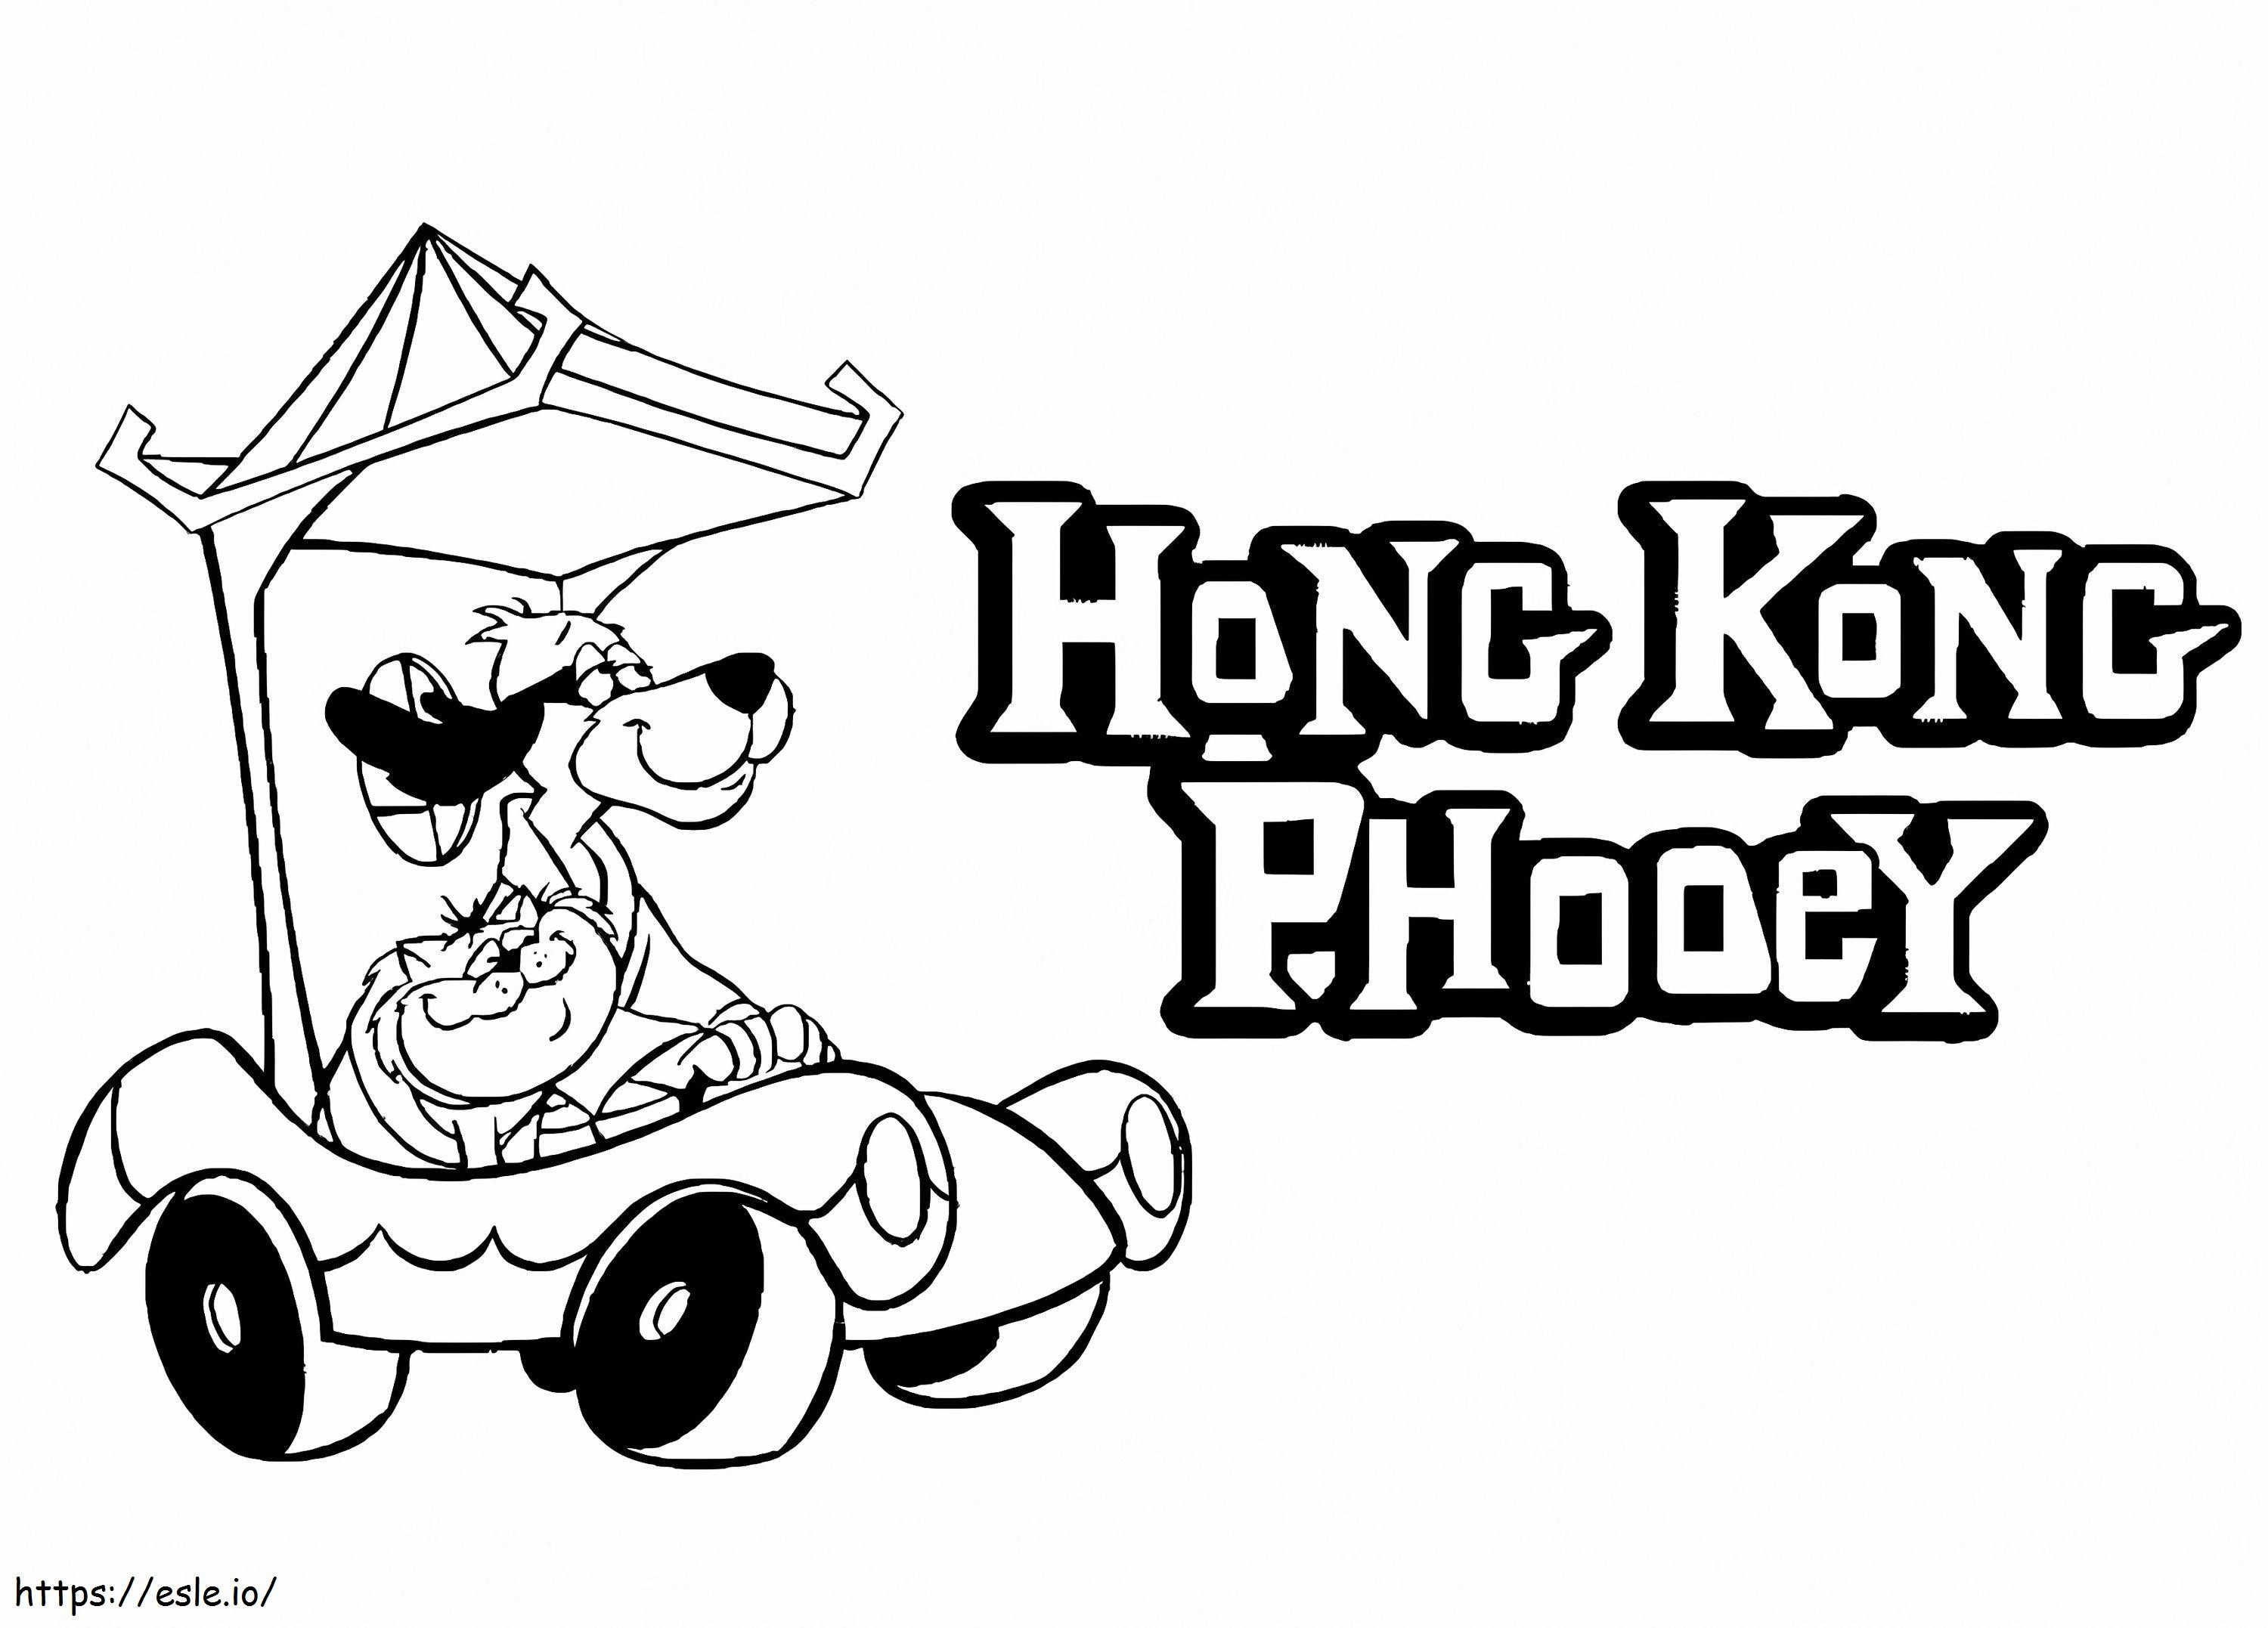 Helyszín Hong Kong Phooeyval kifestő